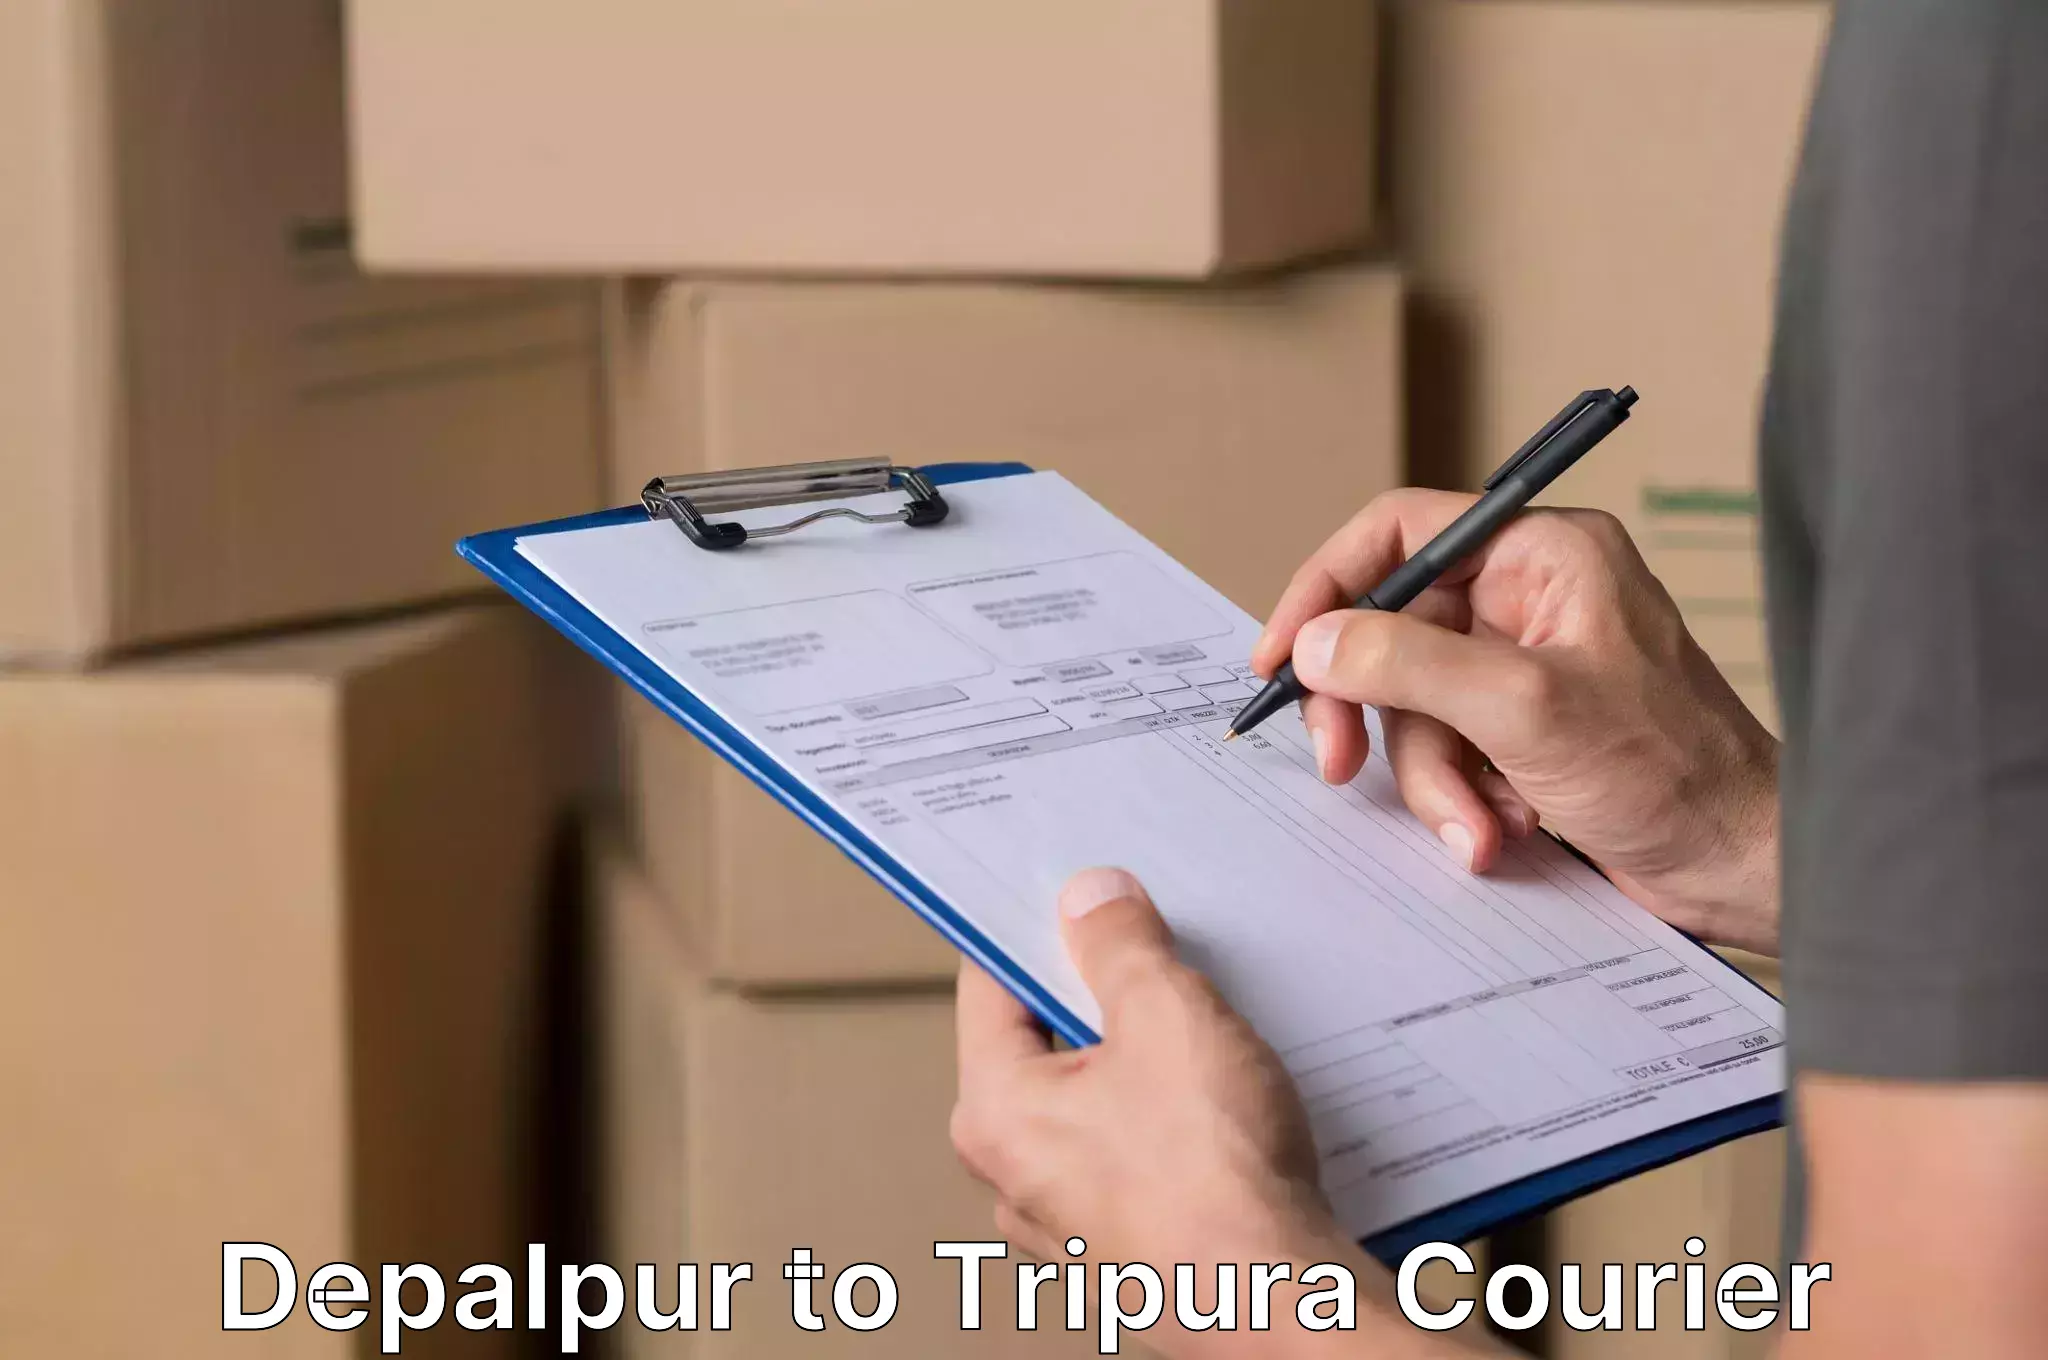 Door-to-door relocation services Depalpur to Udaipur Tripura